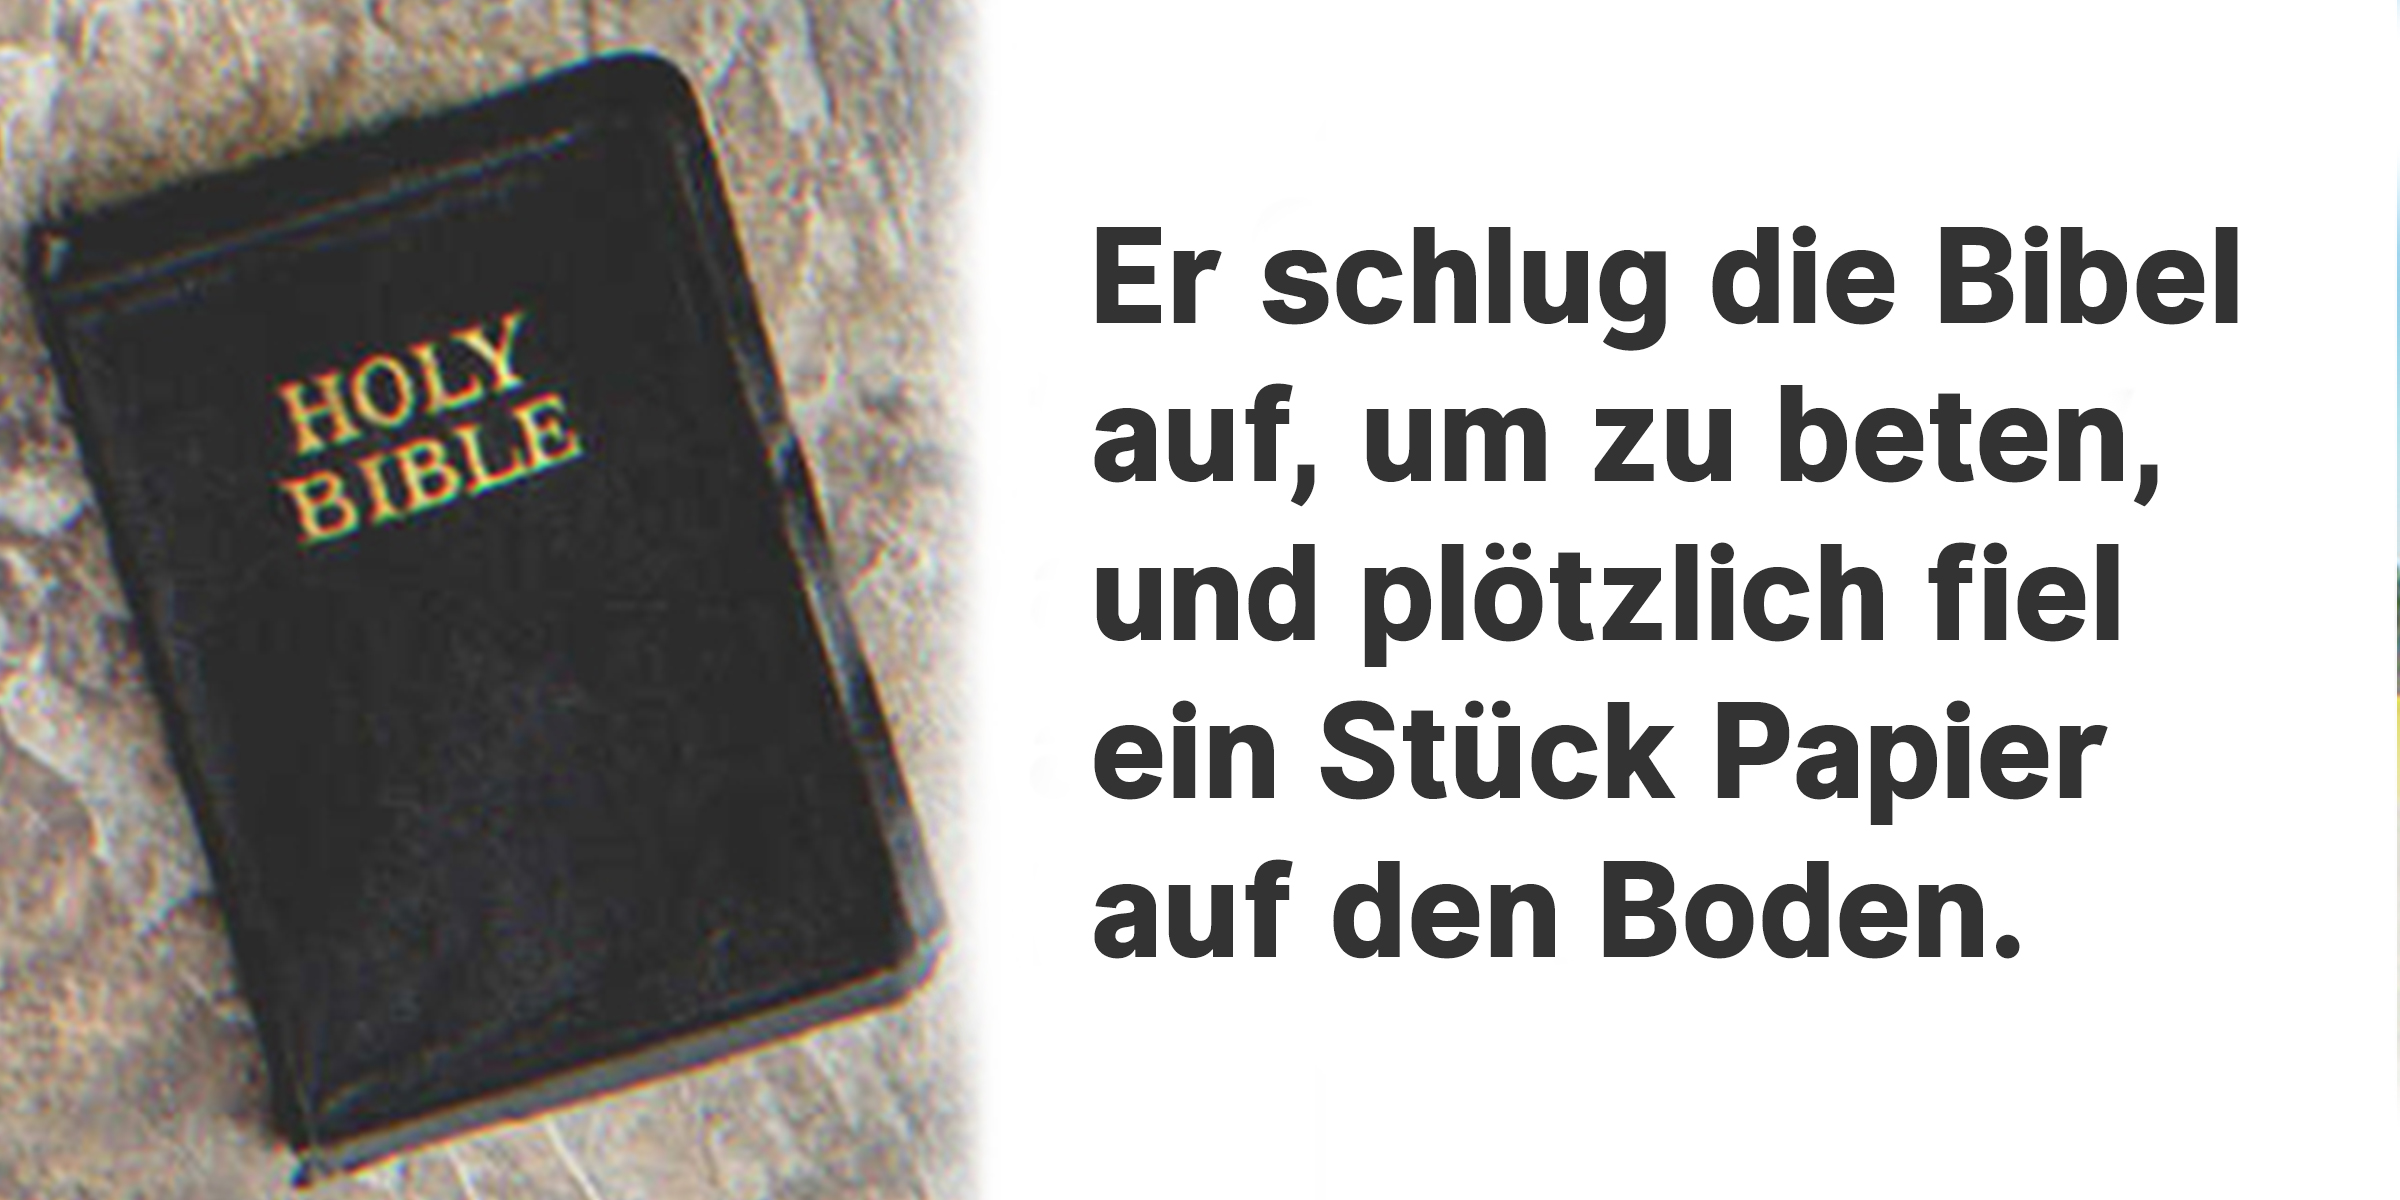 Eine Bibel | Quelle: Shutterstock